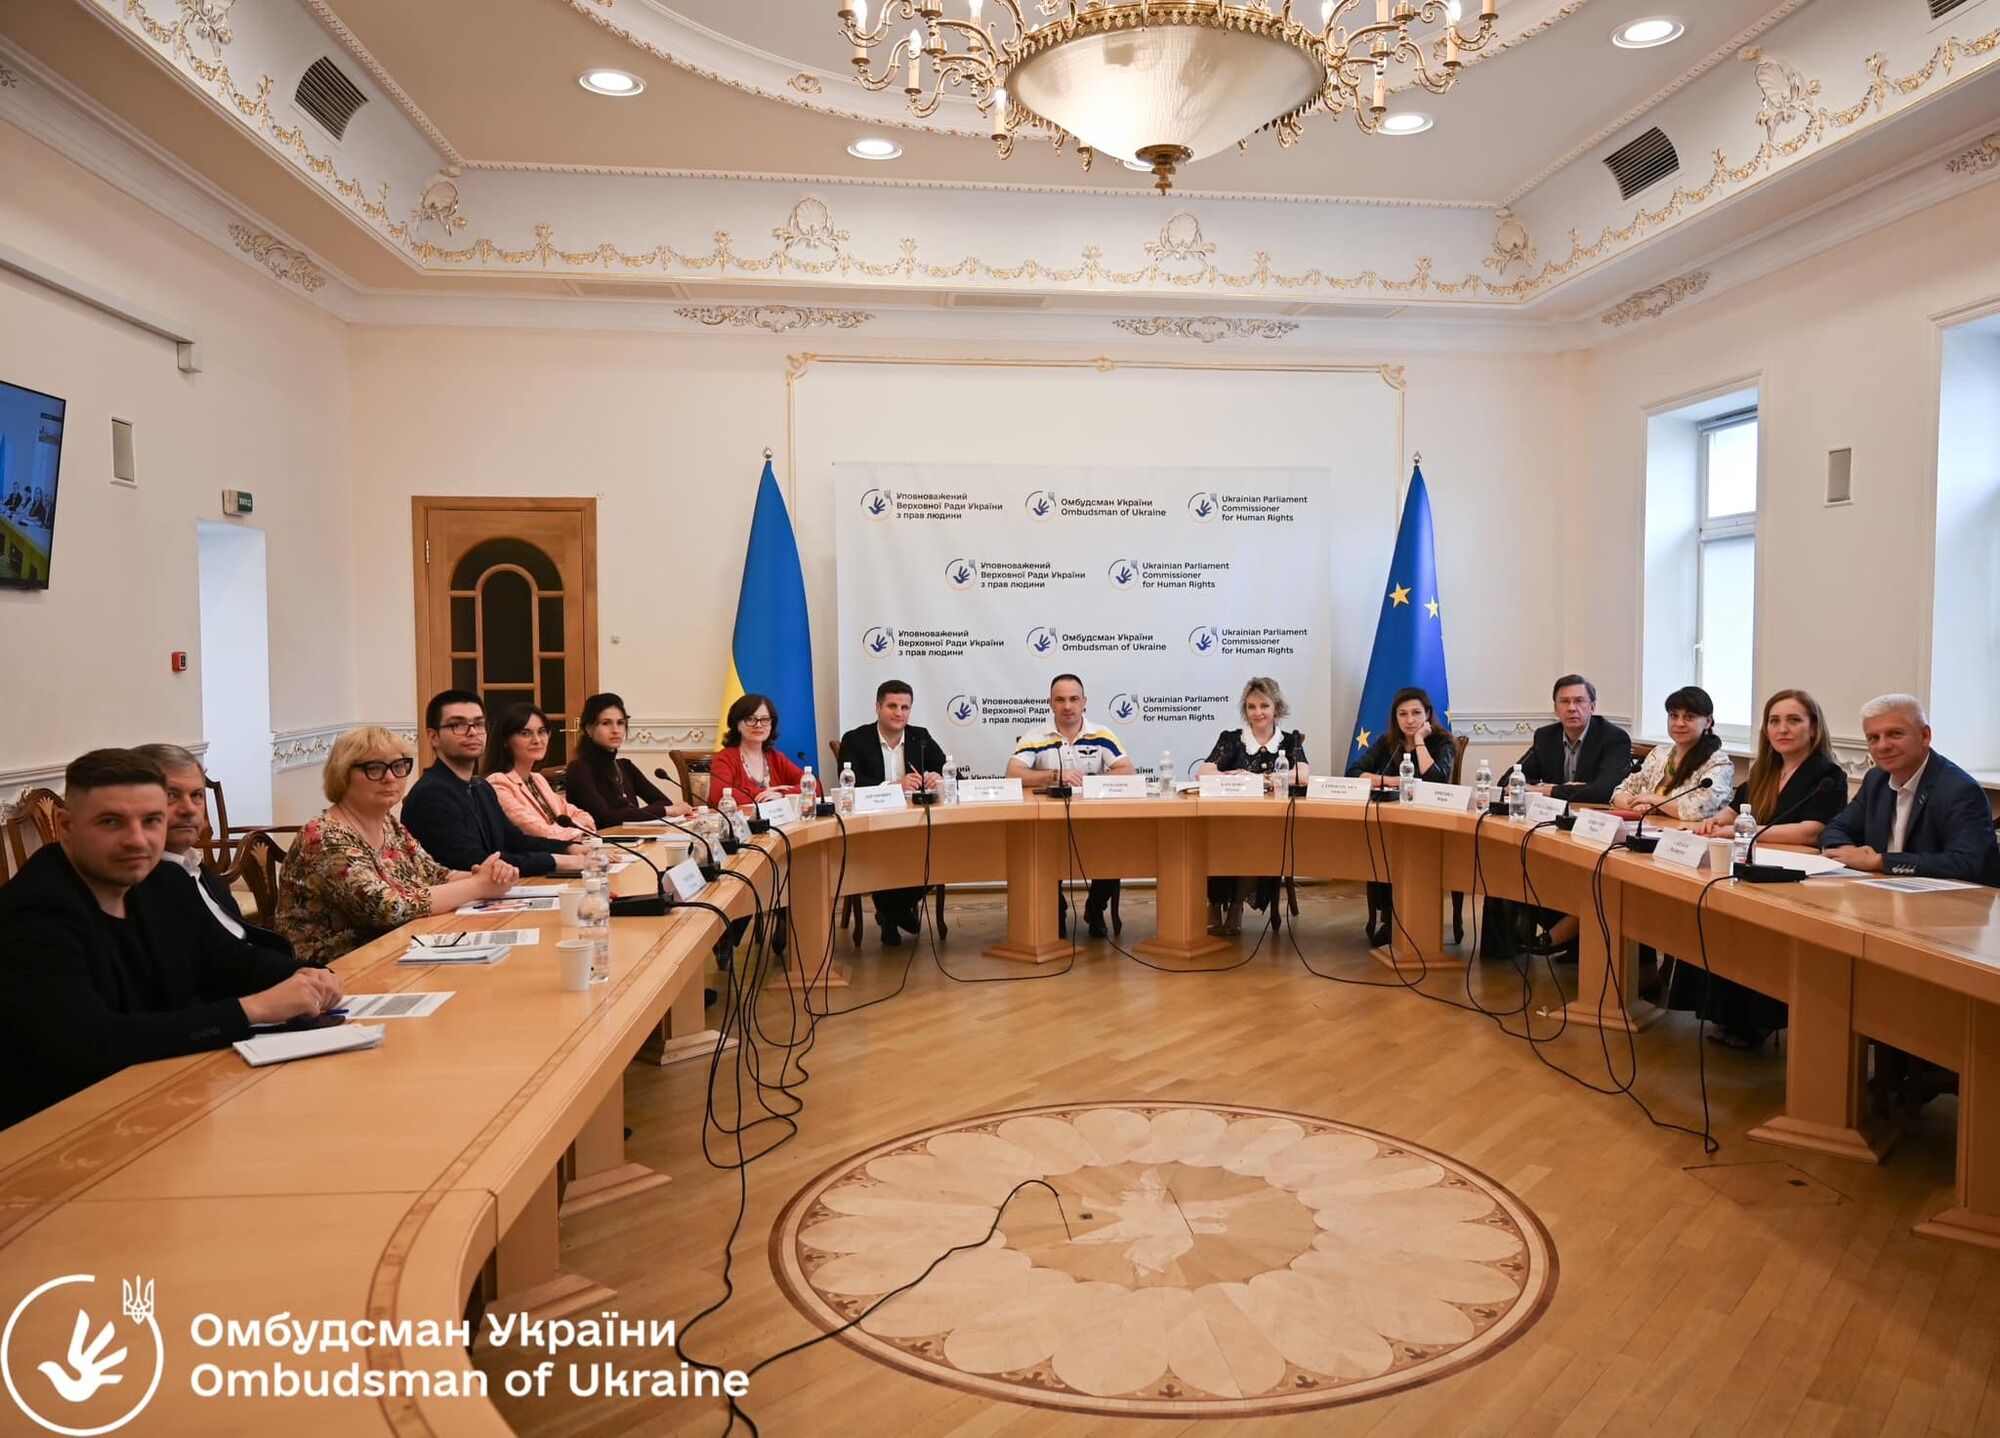 Участники обсудили проблемные вопросы предоставления бесплатной правовой помощи в Украине